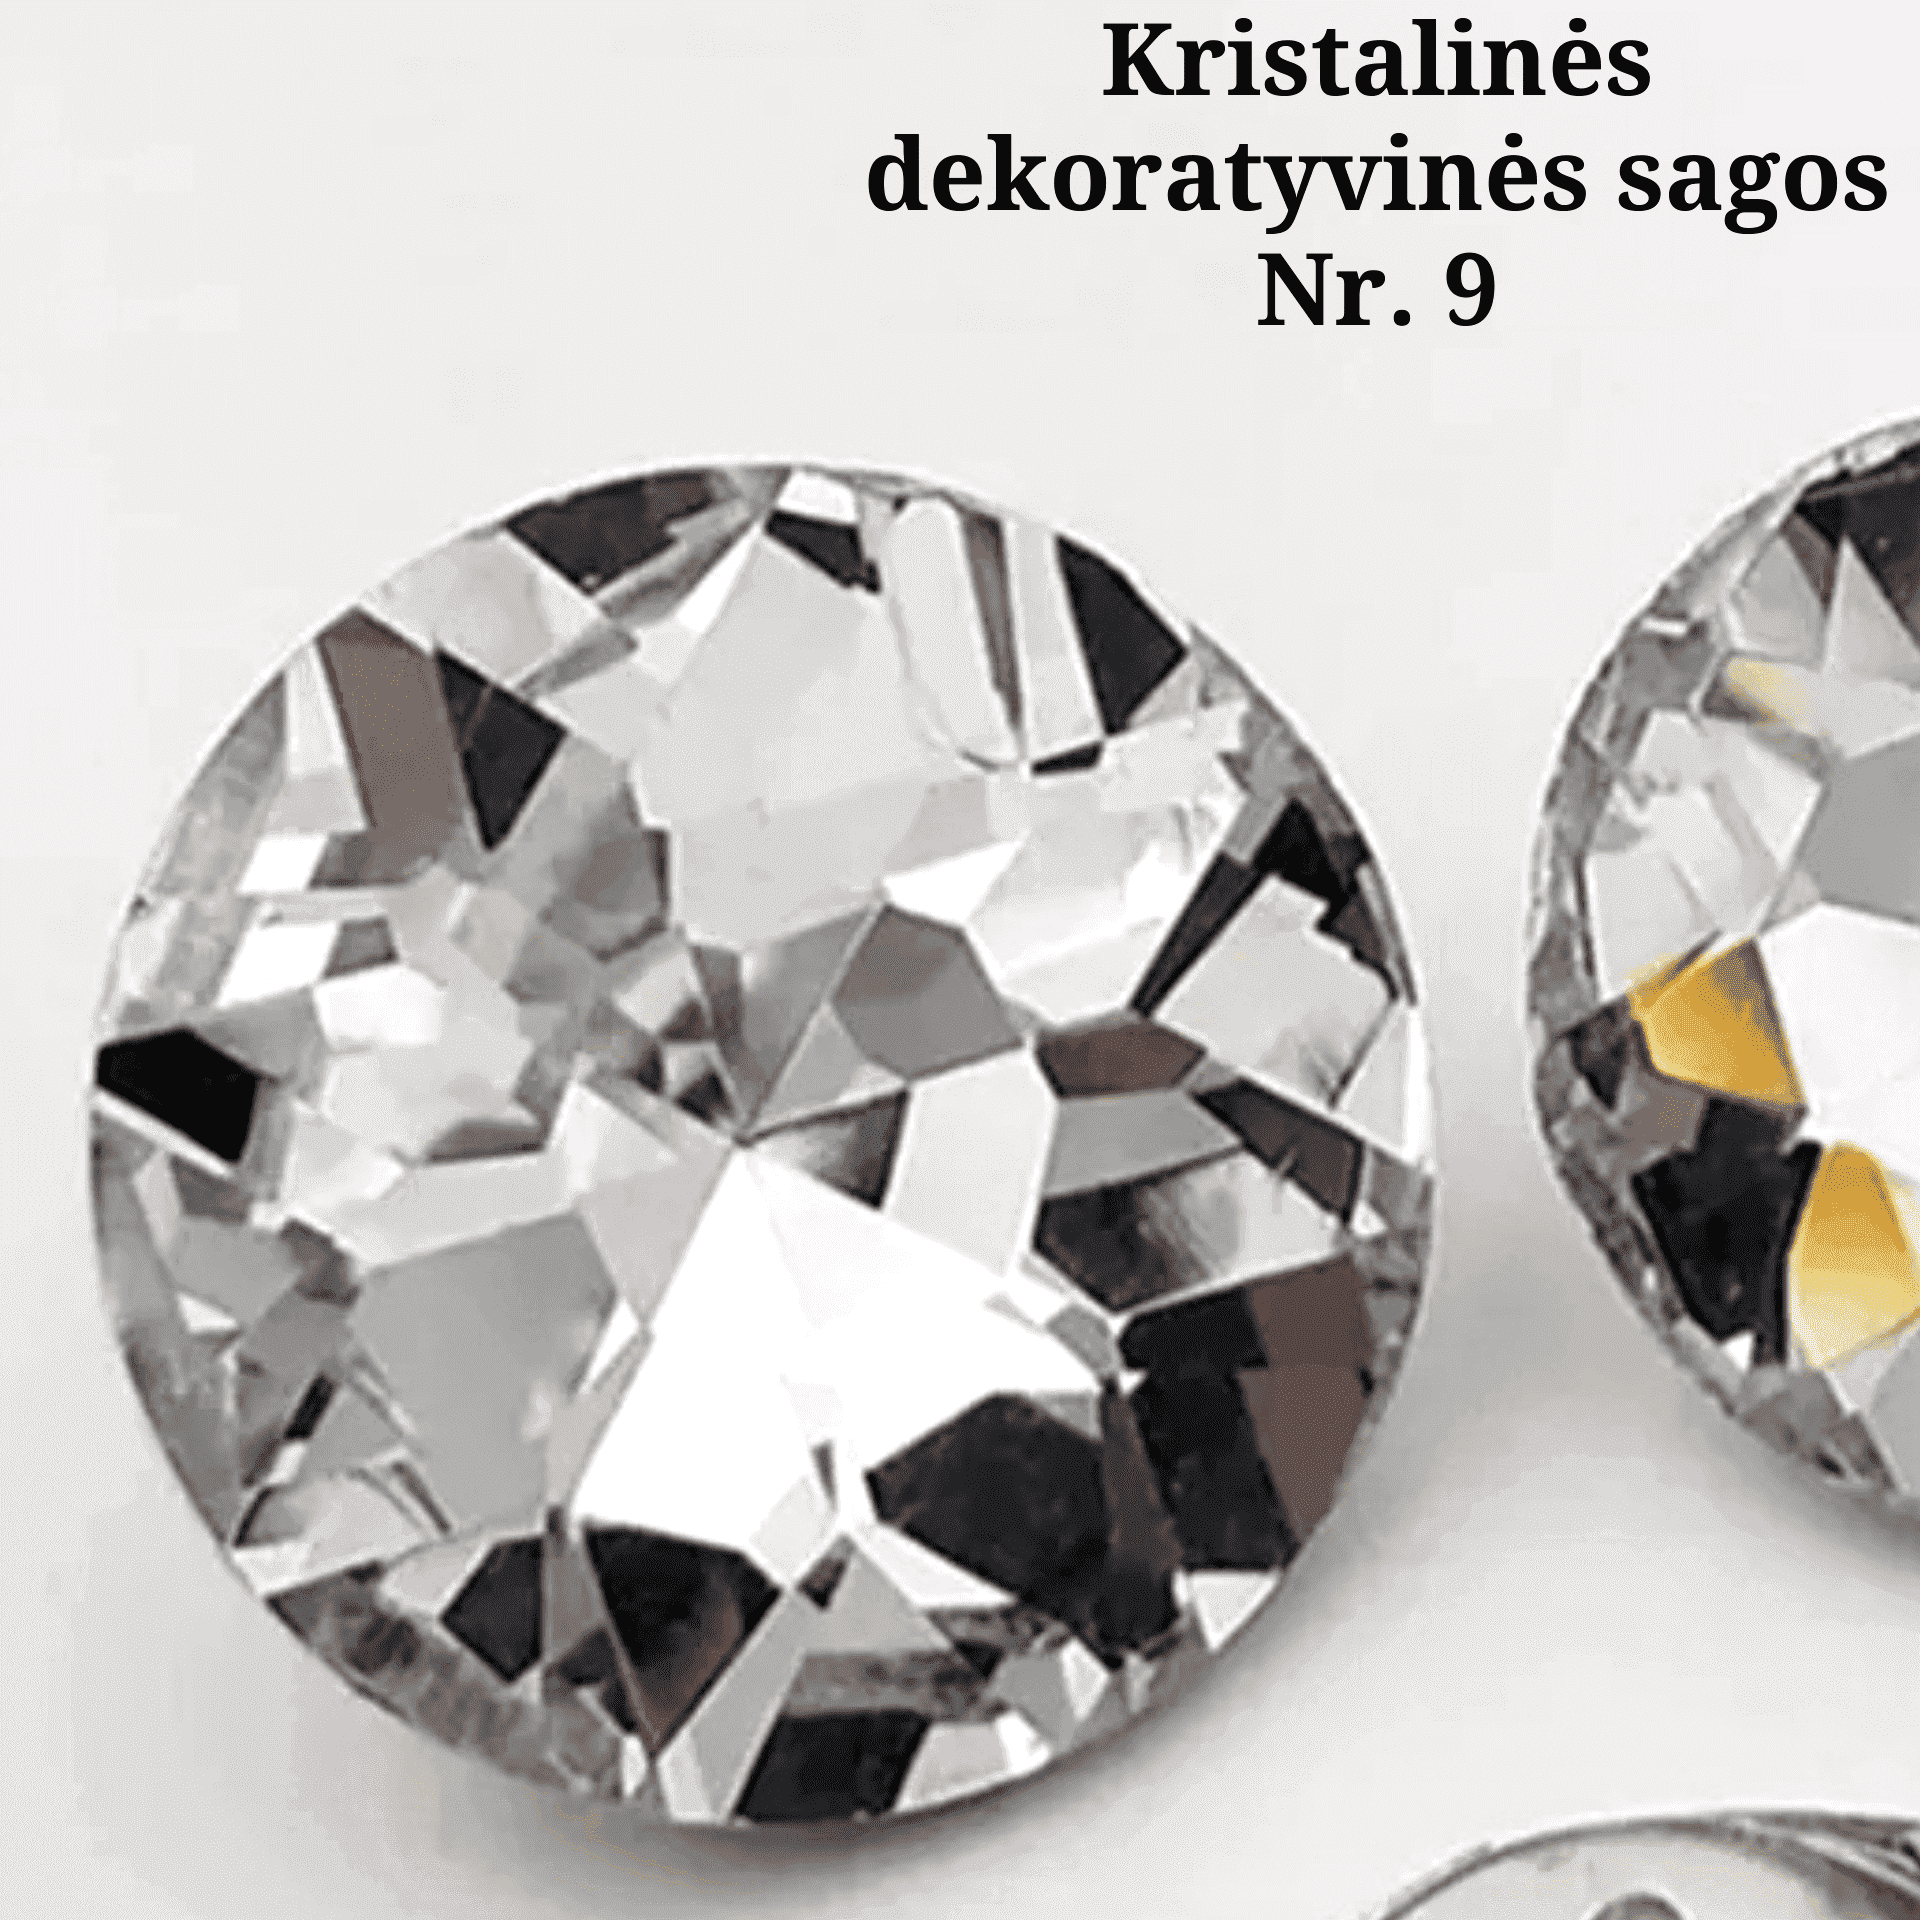 VISOS LOVOS - Kristalinės dekoratyvinės sagos Nr. 9